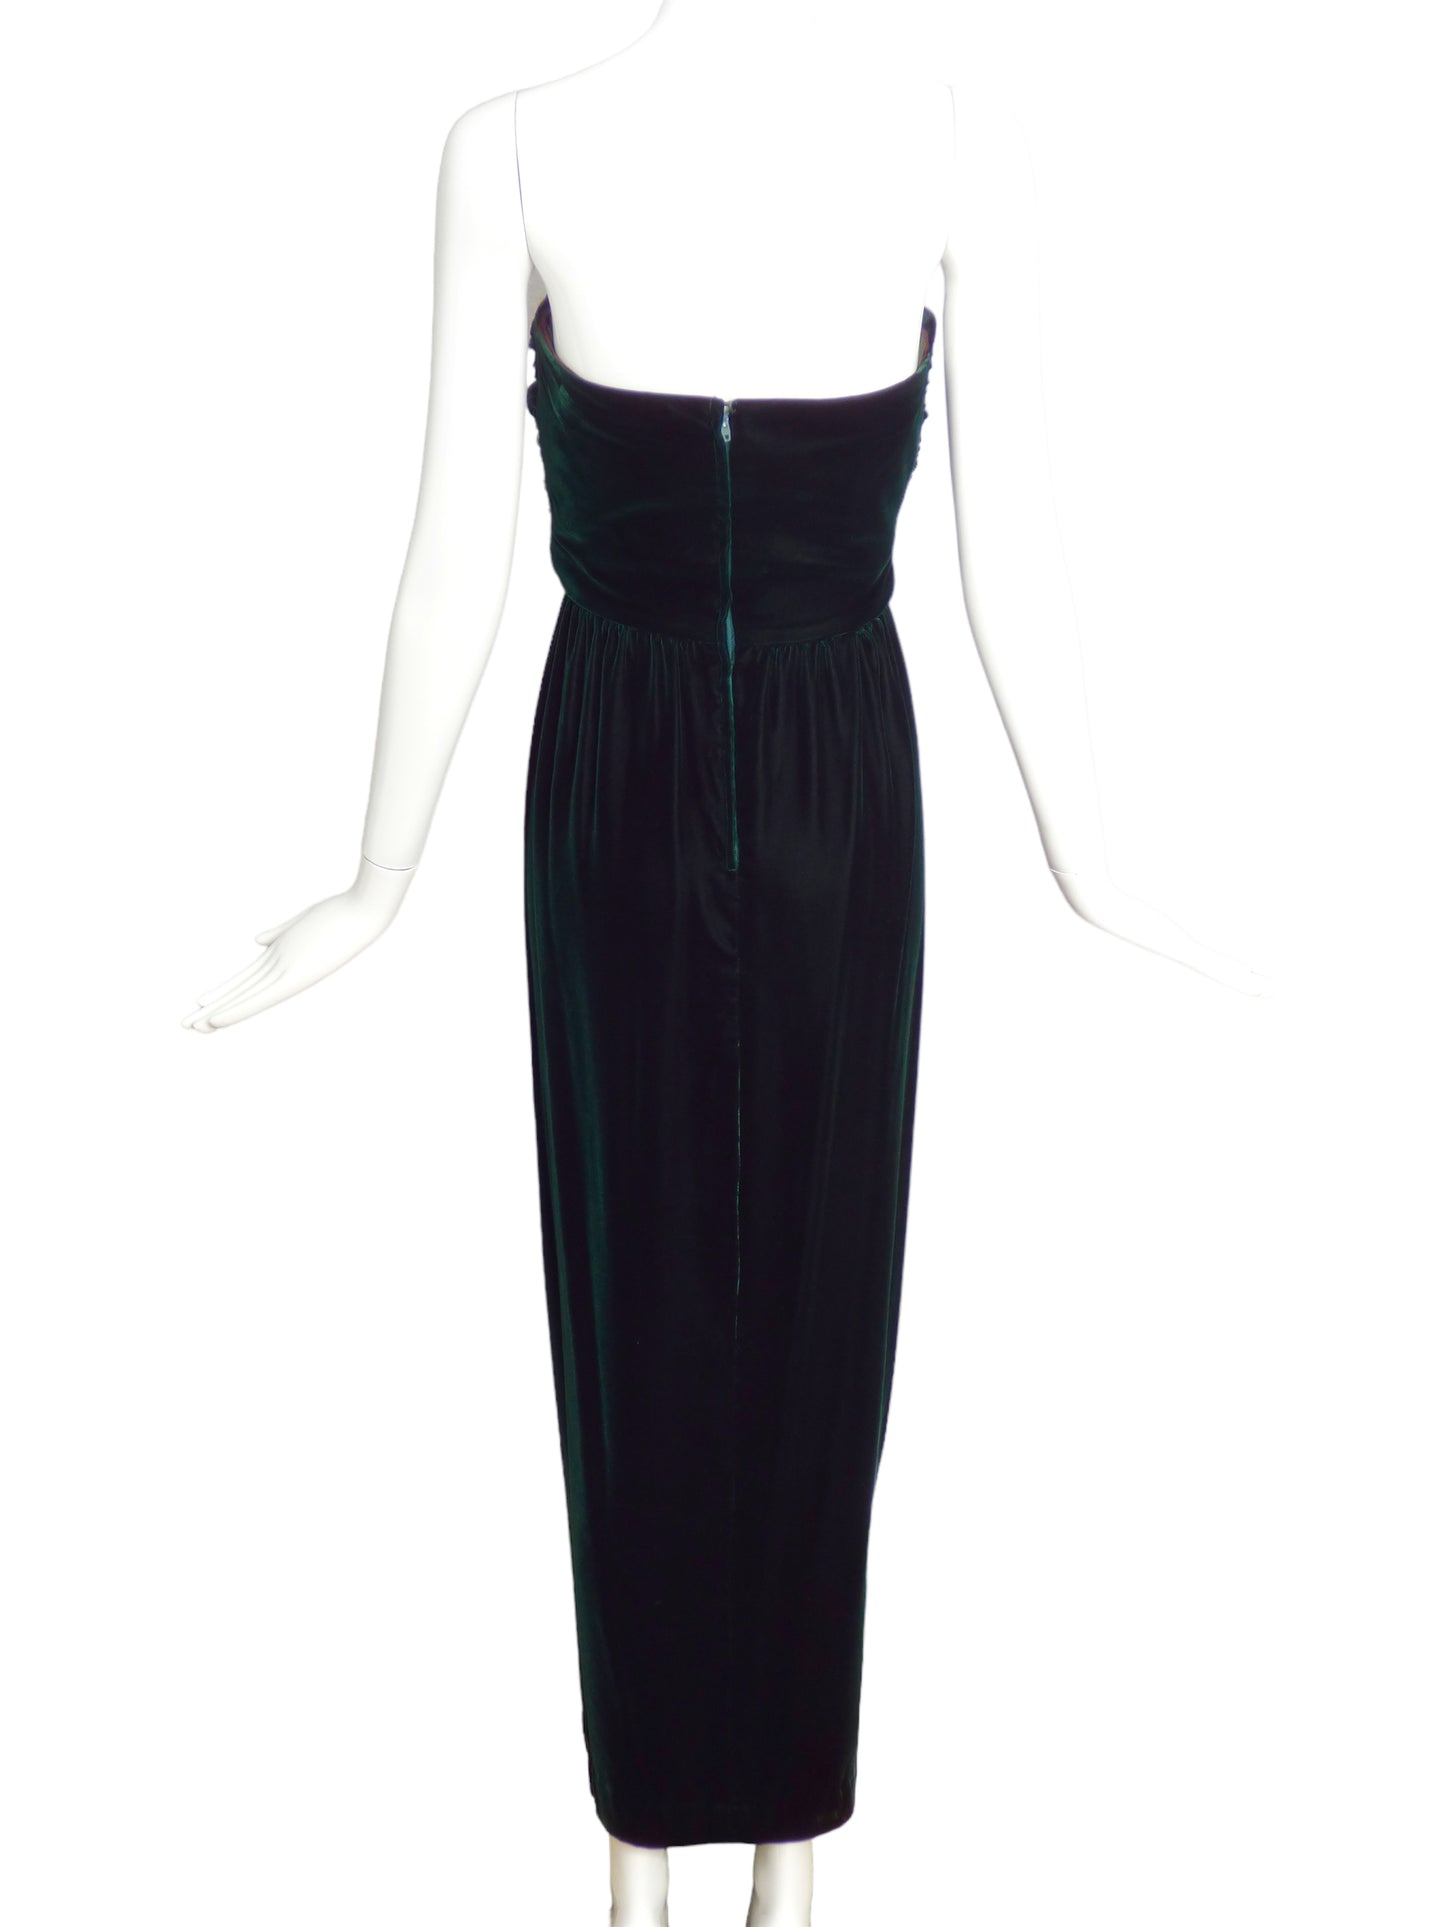 ALBERT CAPRARO- 1970s Green Velvet Gown, Size-6